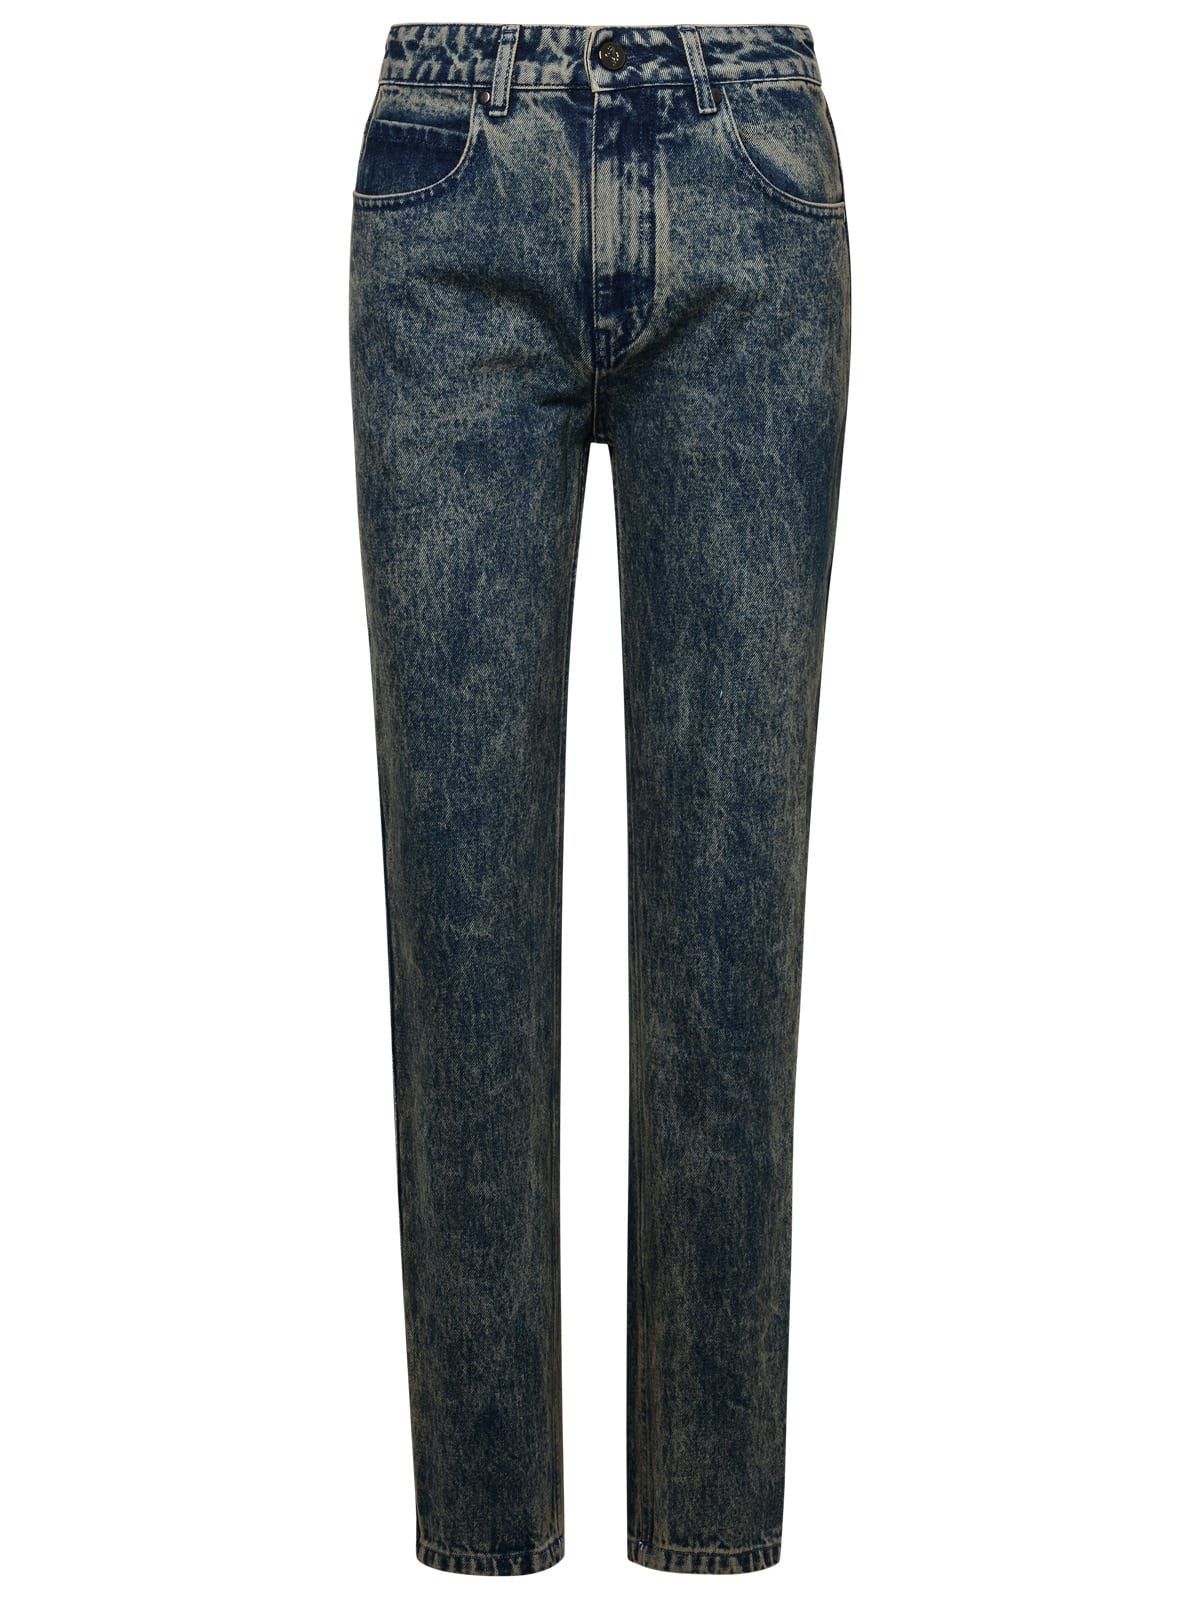 Shop Ferrari Blue Cotton Jeans